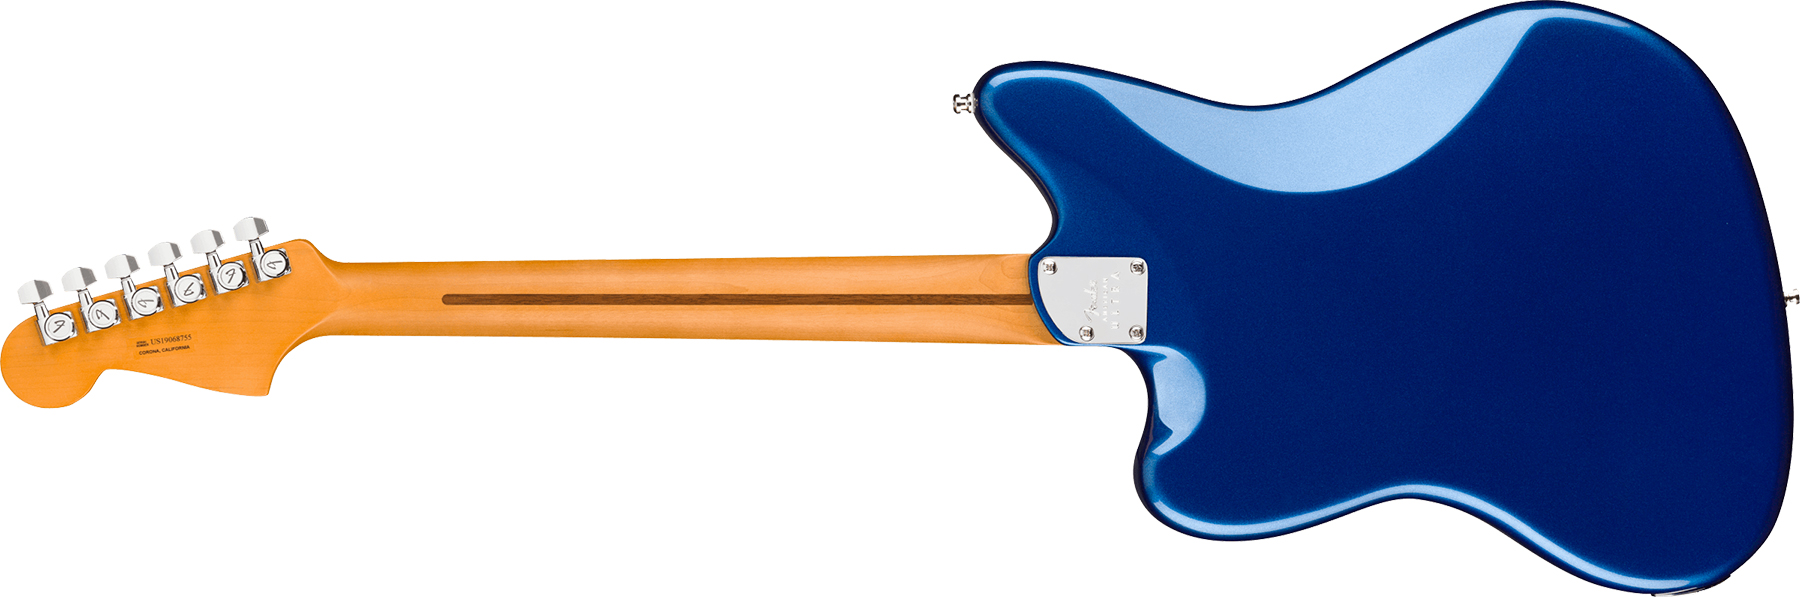 Fender Jazzmaster American Ultra 2019 Usa Mn - Cobra Blue - Retro-rock elektrische gitaar - Variation 1